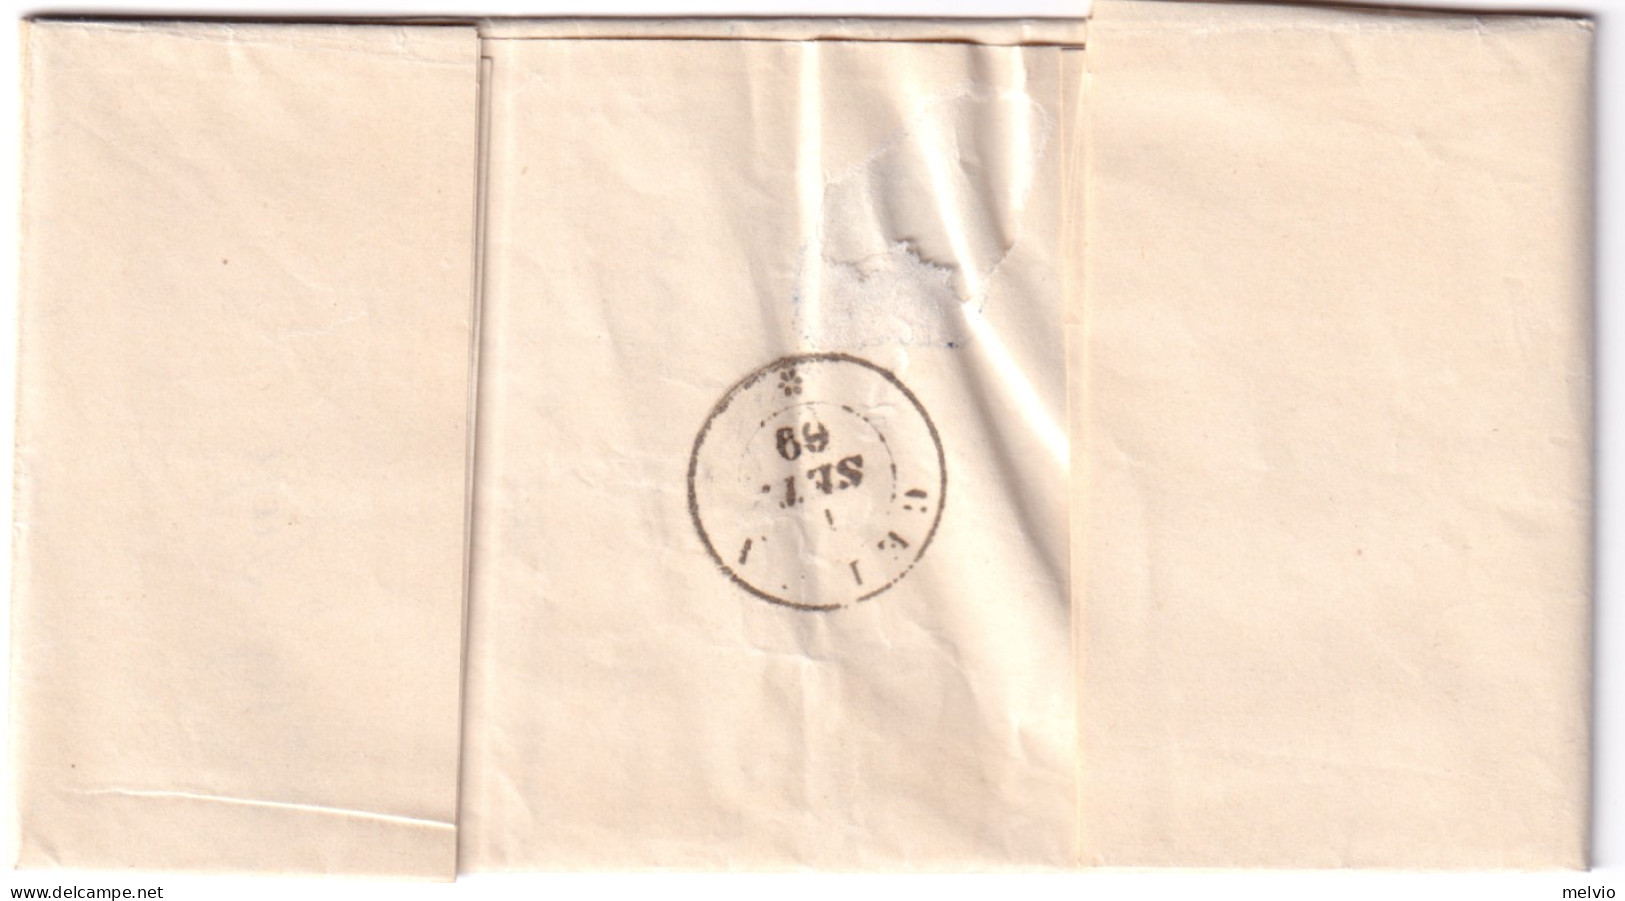 1869-PADOVA C1+punti (31.8) Su Lettera Completa Testo Affrancata C.20 - Marcophilia